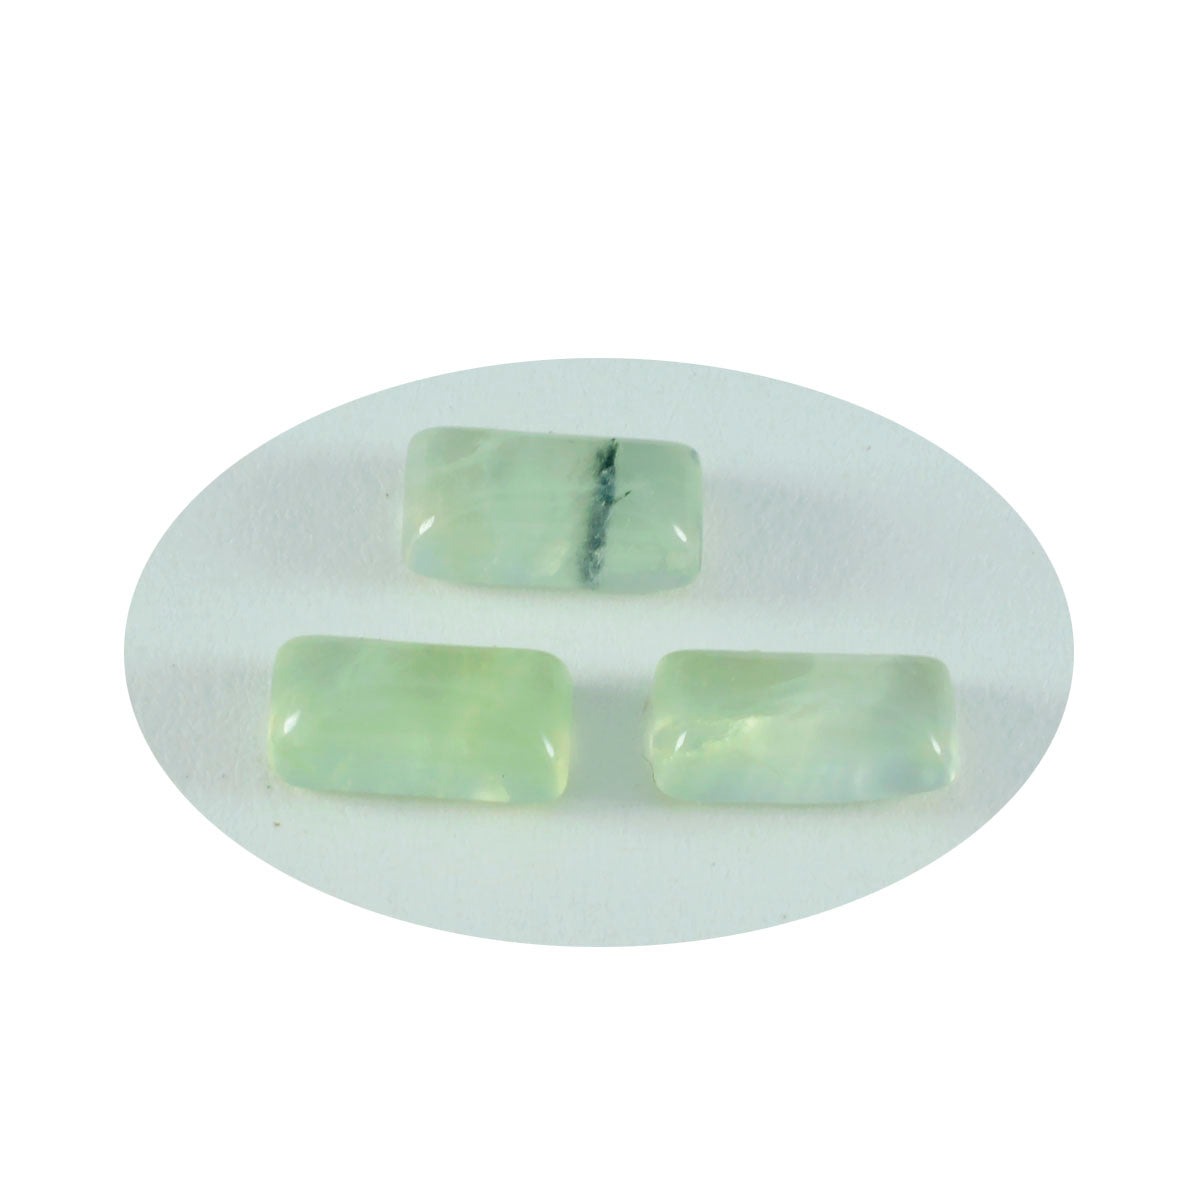 Riyogems 1 pieza cabujón de prehnita verde 9x18 mm forma baguett gemas sueltas de fantástica calidad